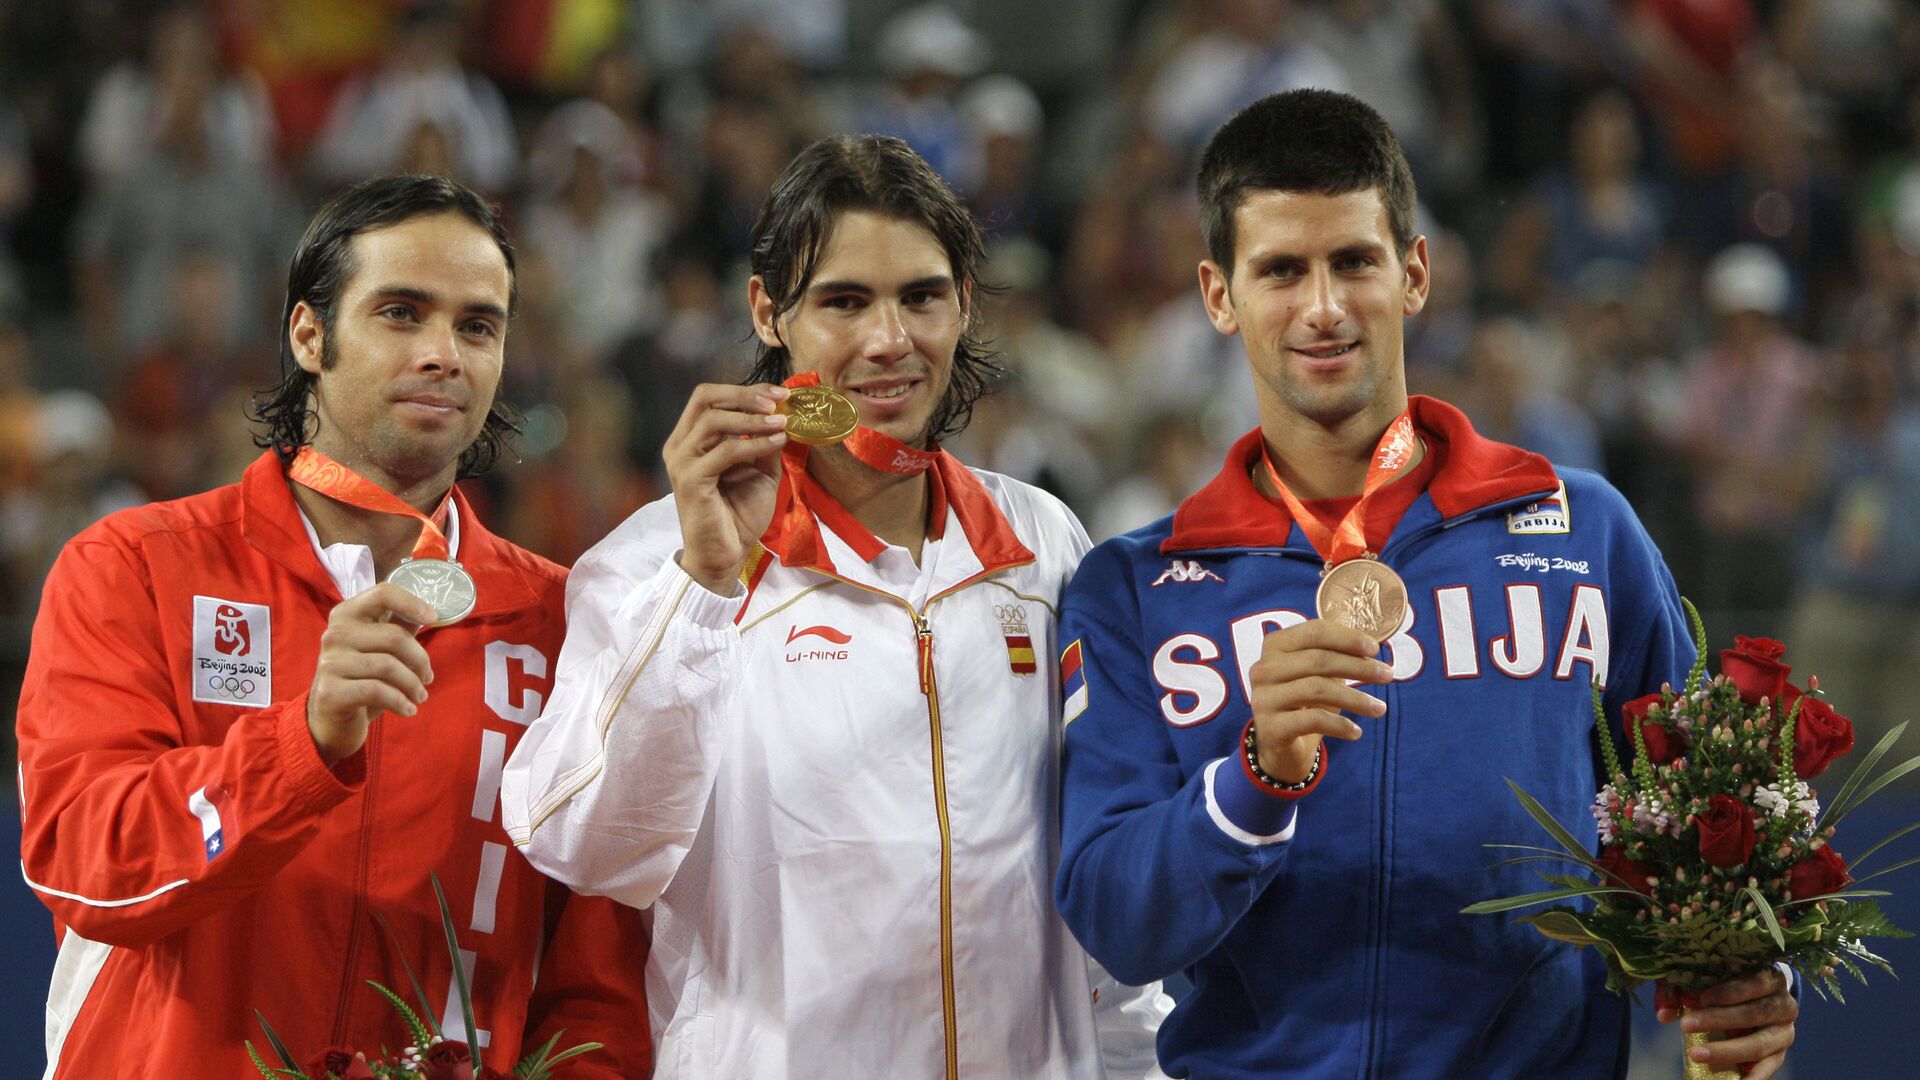 Fernando Gonzales, Rafael Nadal i Novak Đoković, osvajači olimpijskih medalja u Pekingu 2008. - Sputnik Srbija, 1920, 15.07.2021